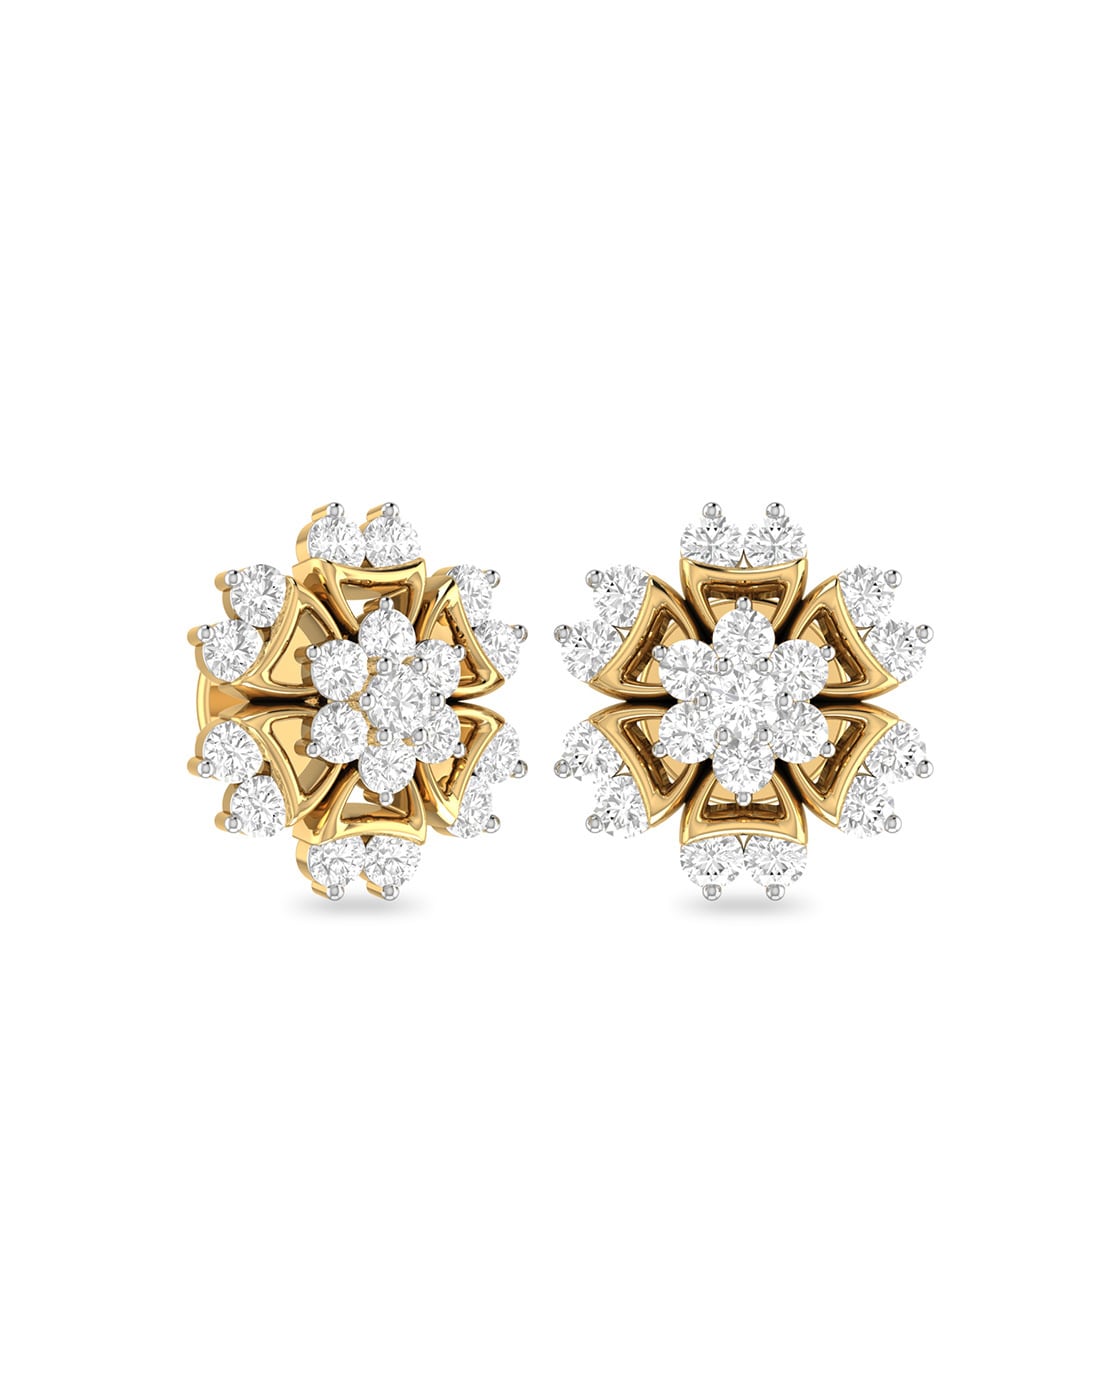 Share more than 134 7 diamond earrings super hot  seveneduvn